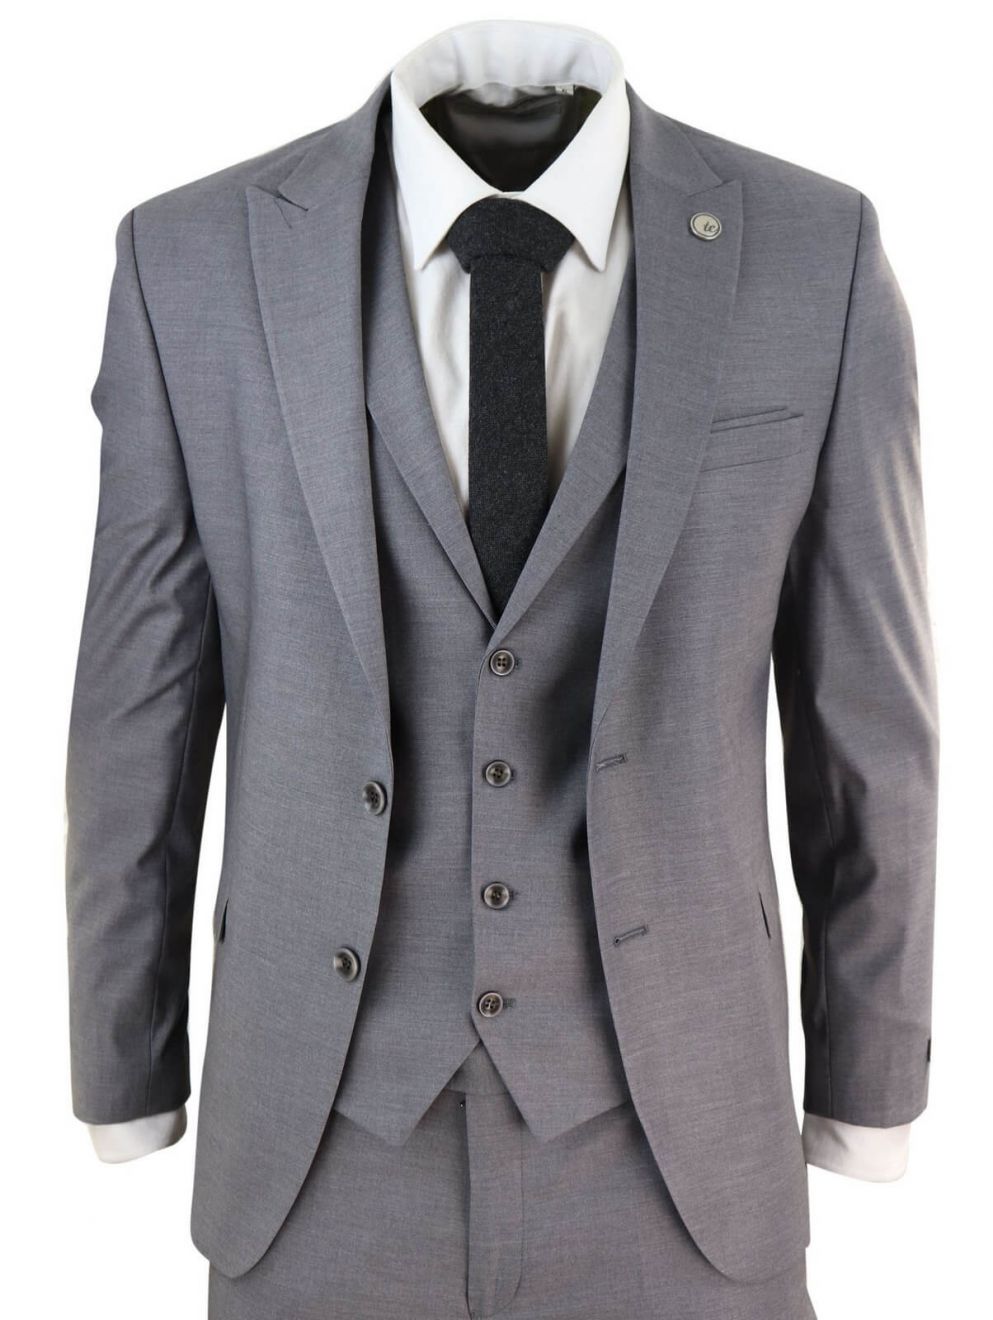 Mens Grey 3 Piece Suit: Buy Online - Happy Gentleman United States